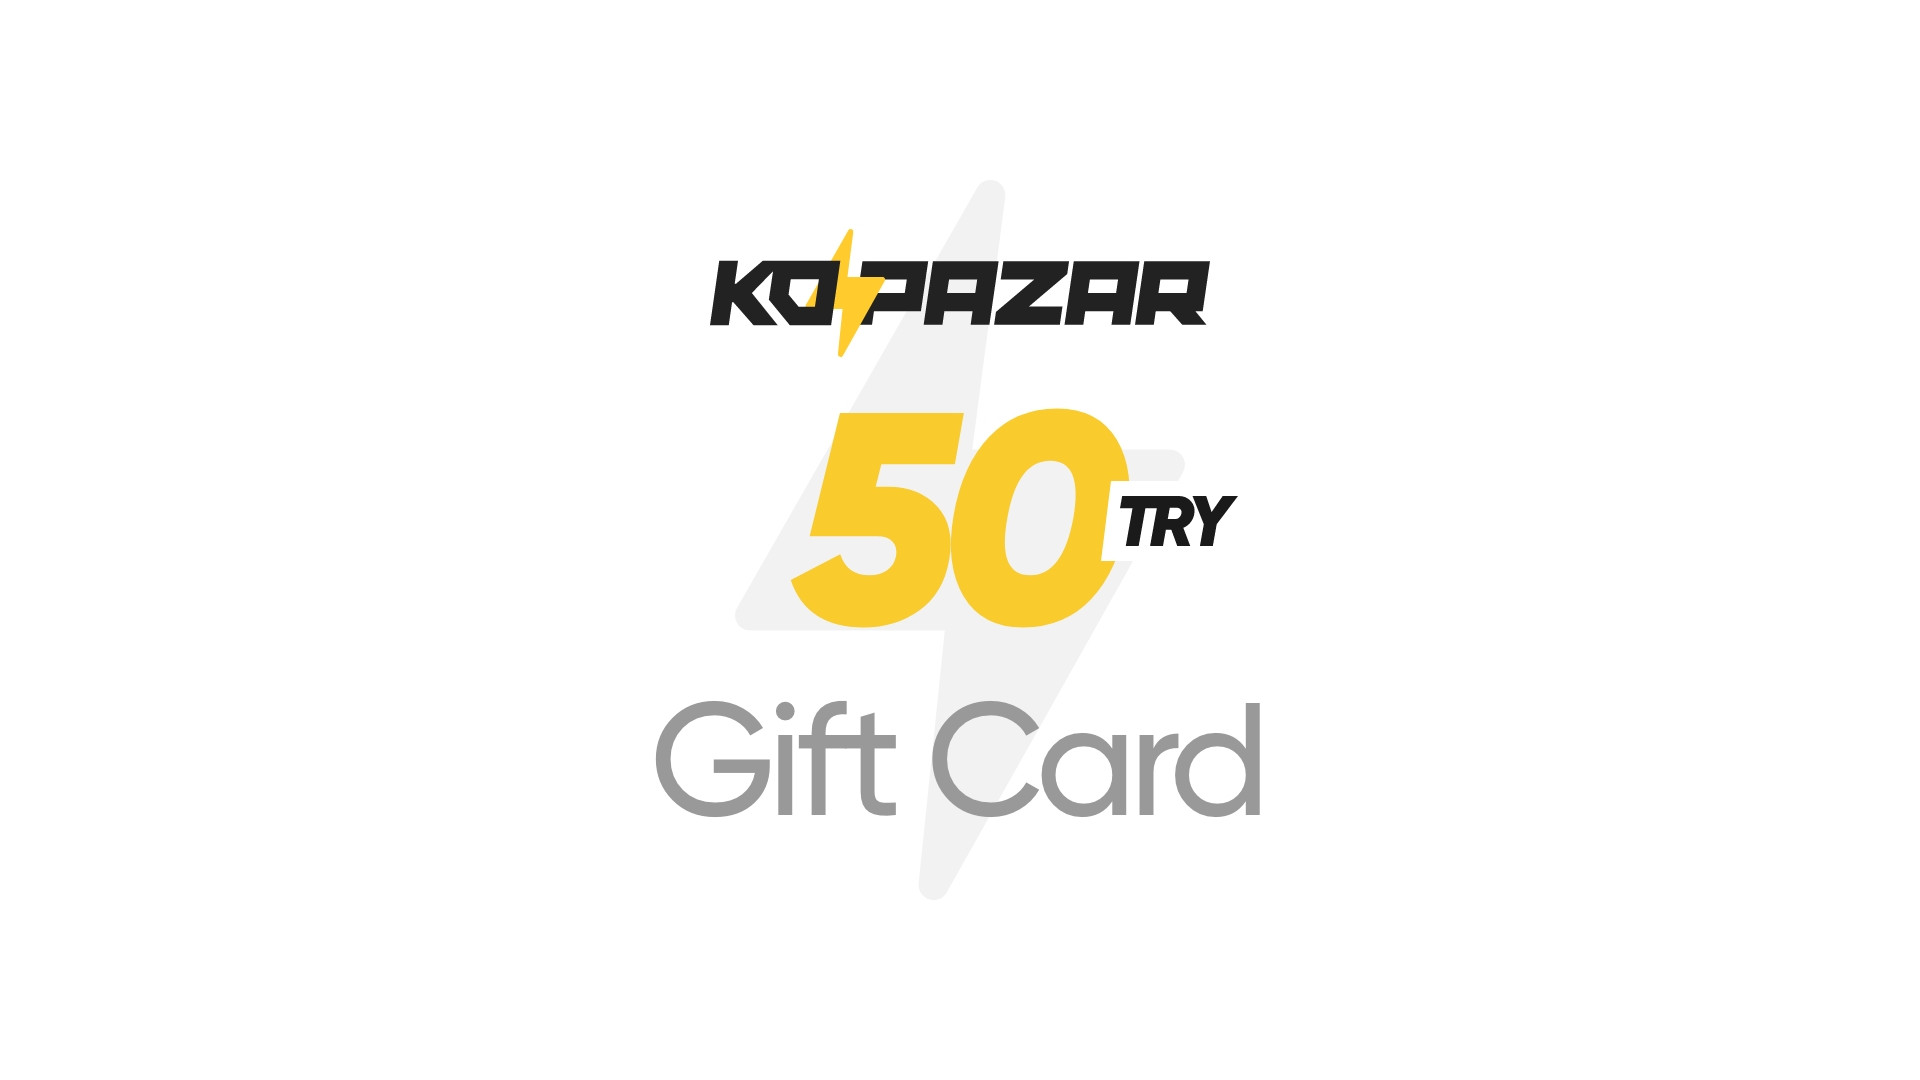 (2.09$) Kopazar 50 TRY Gift Card